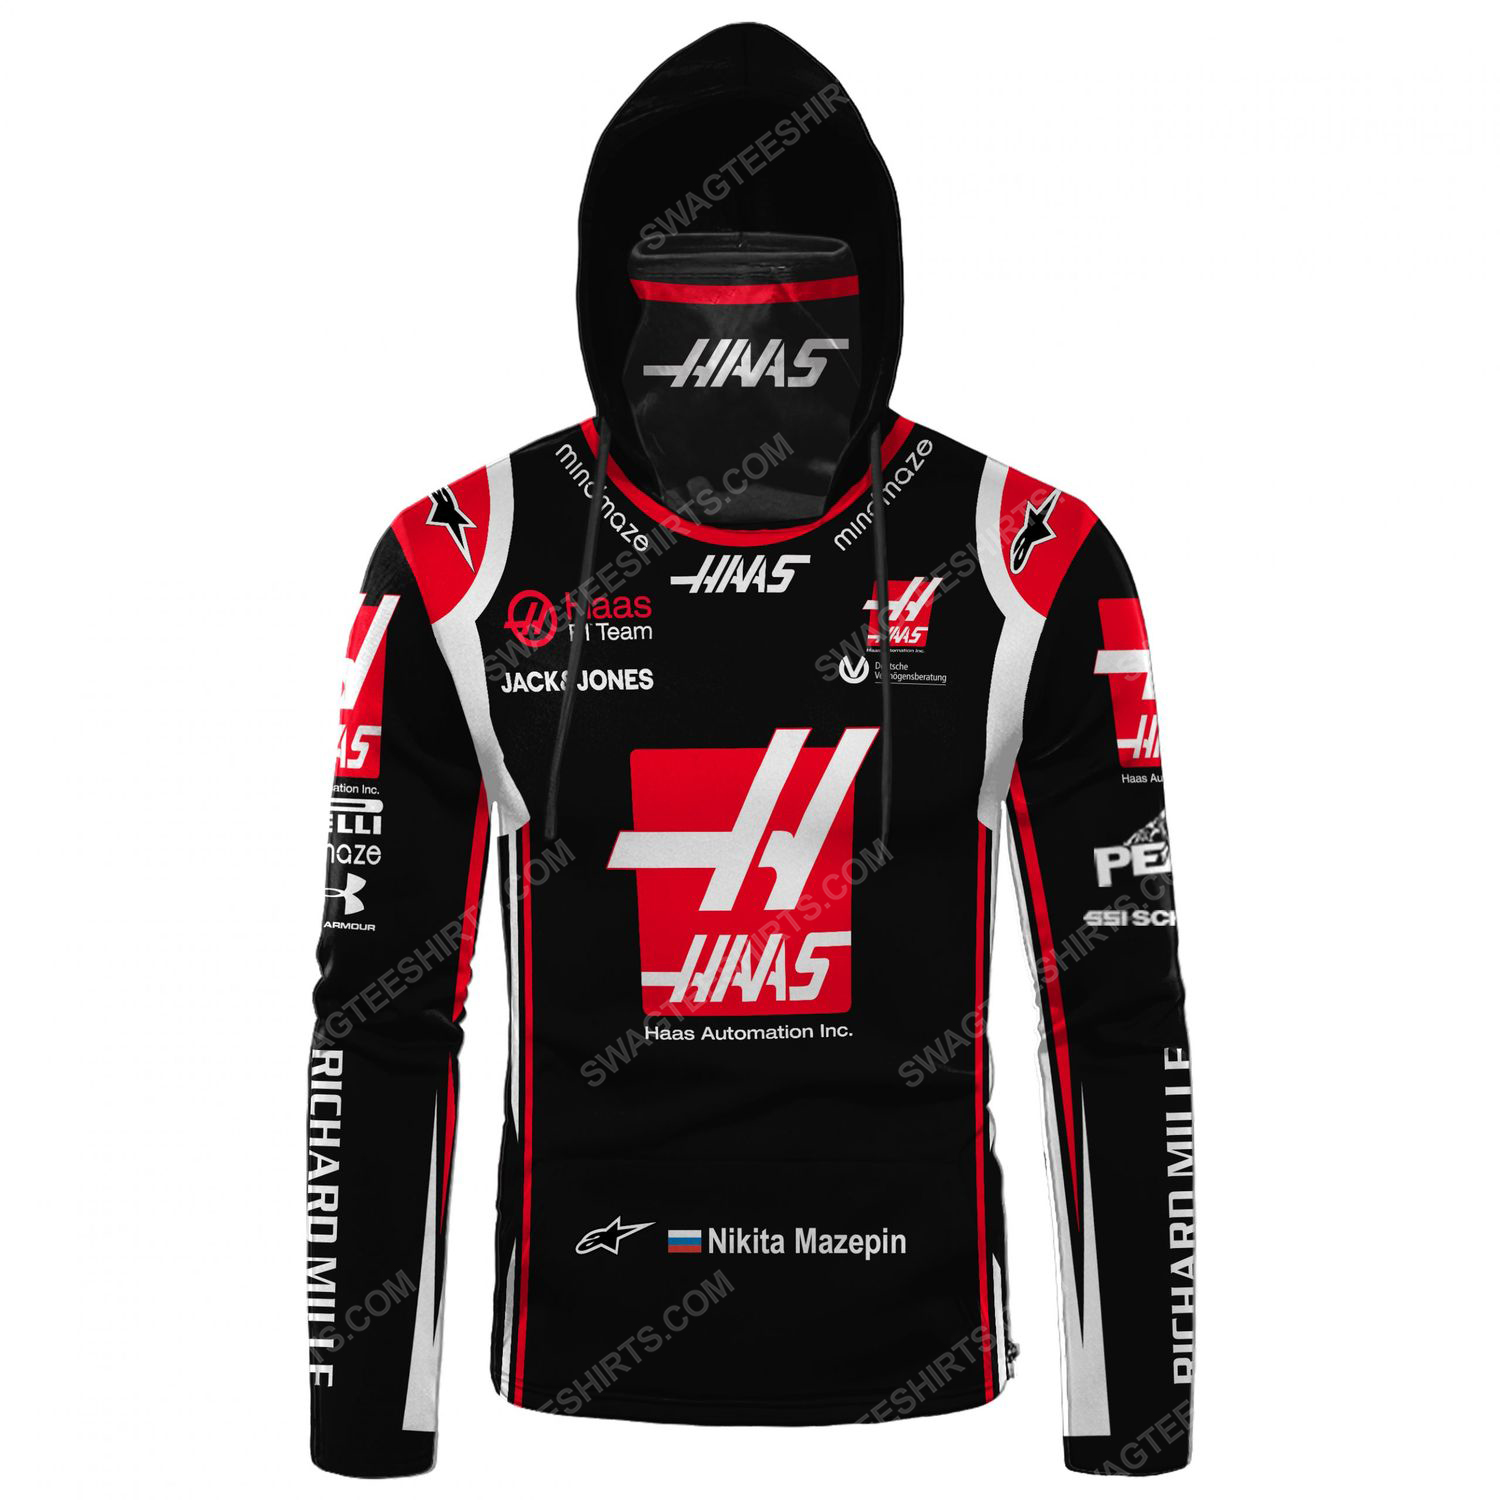 Haas automation inc racing team motorsport full printing hoodie mask